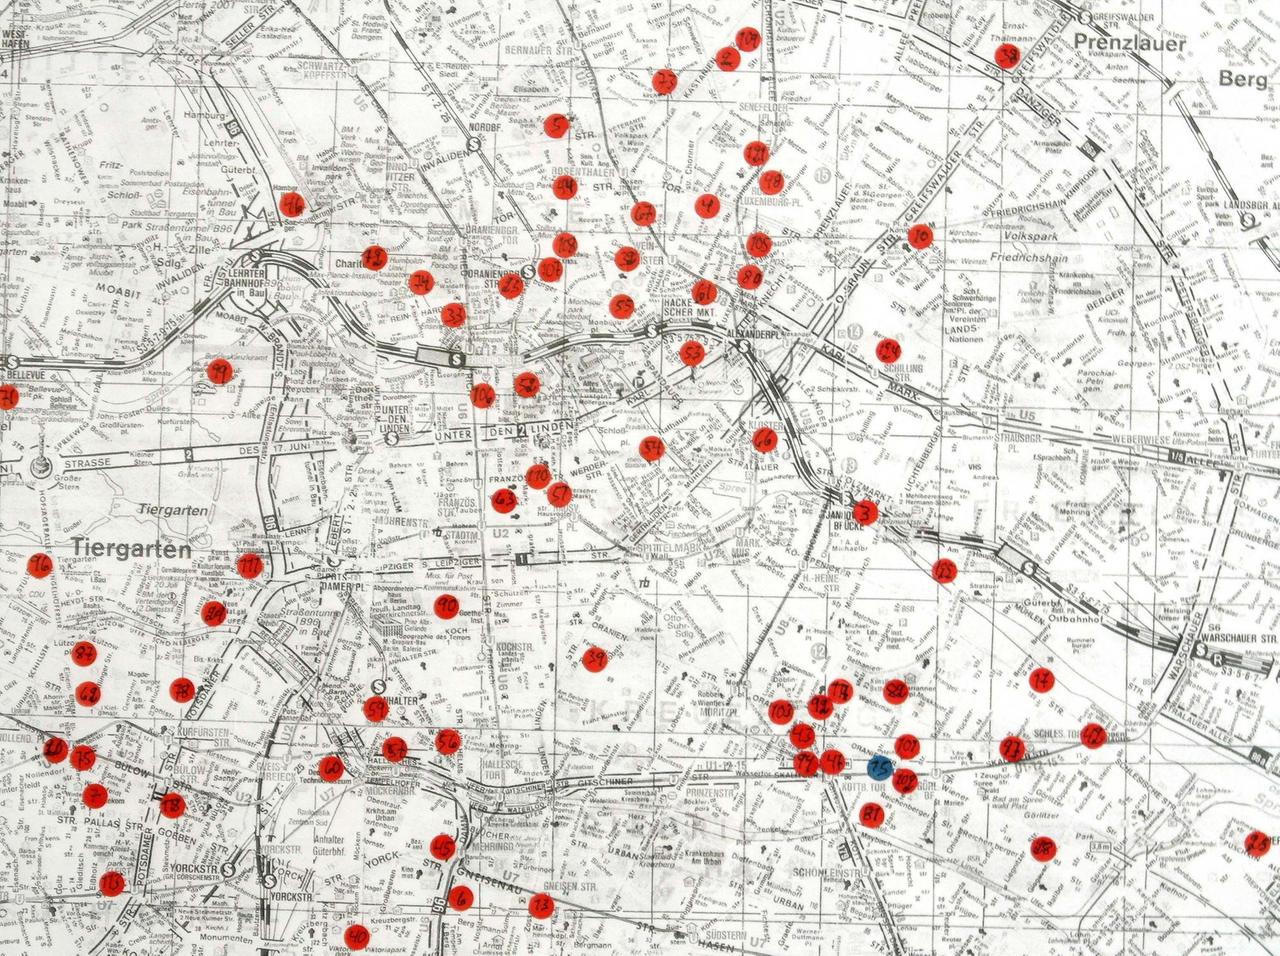 Ein Stadtplan mit vielen roten und wenigen blauen Punkten, der alle Orte markiert, an denen Sven-Åke Johansson in Berlin jemals aufgetreten ist